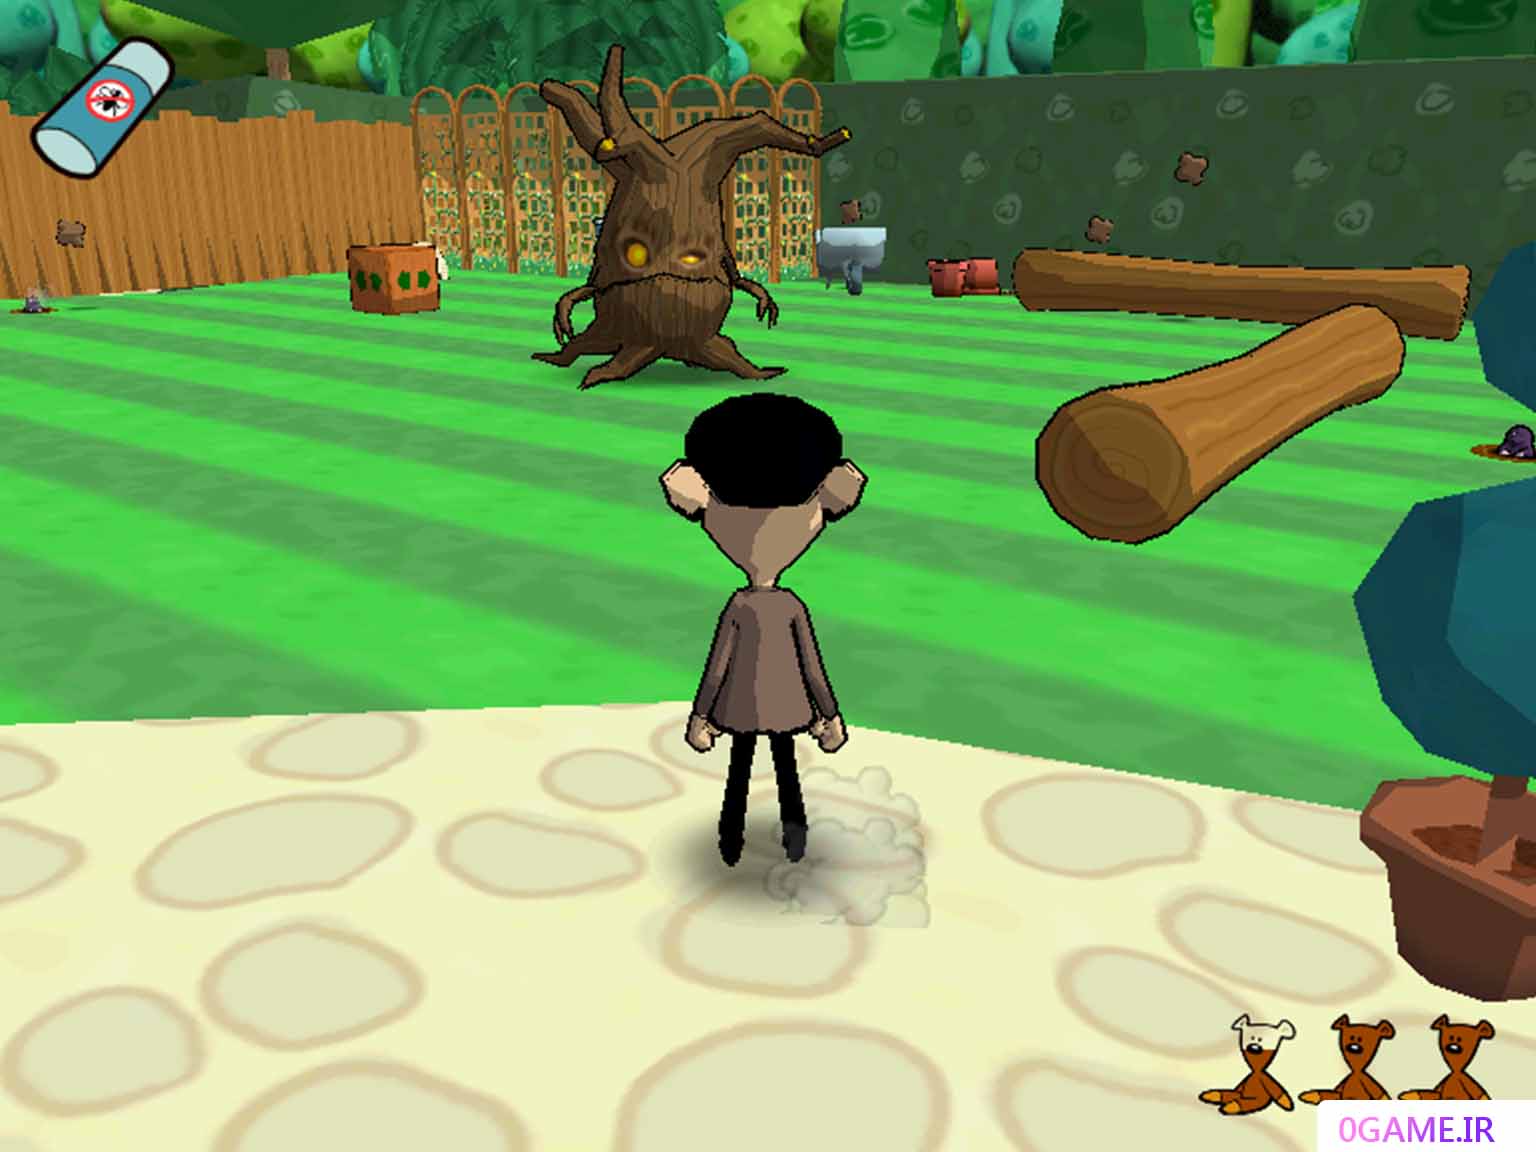 دانلود بازی مستر بین (Mr Bean's Wacky World) نسخه کامل برای کامپیوتر